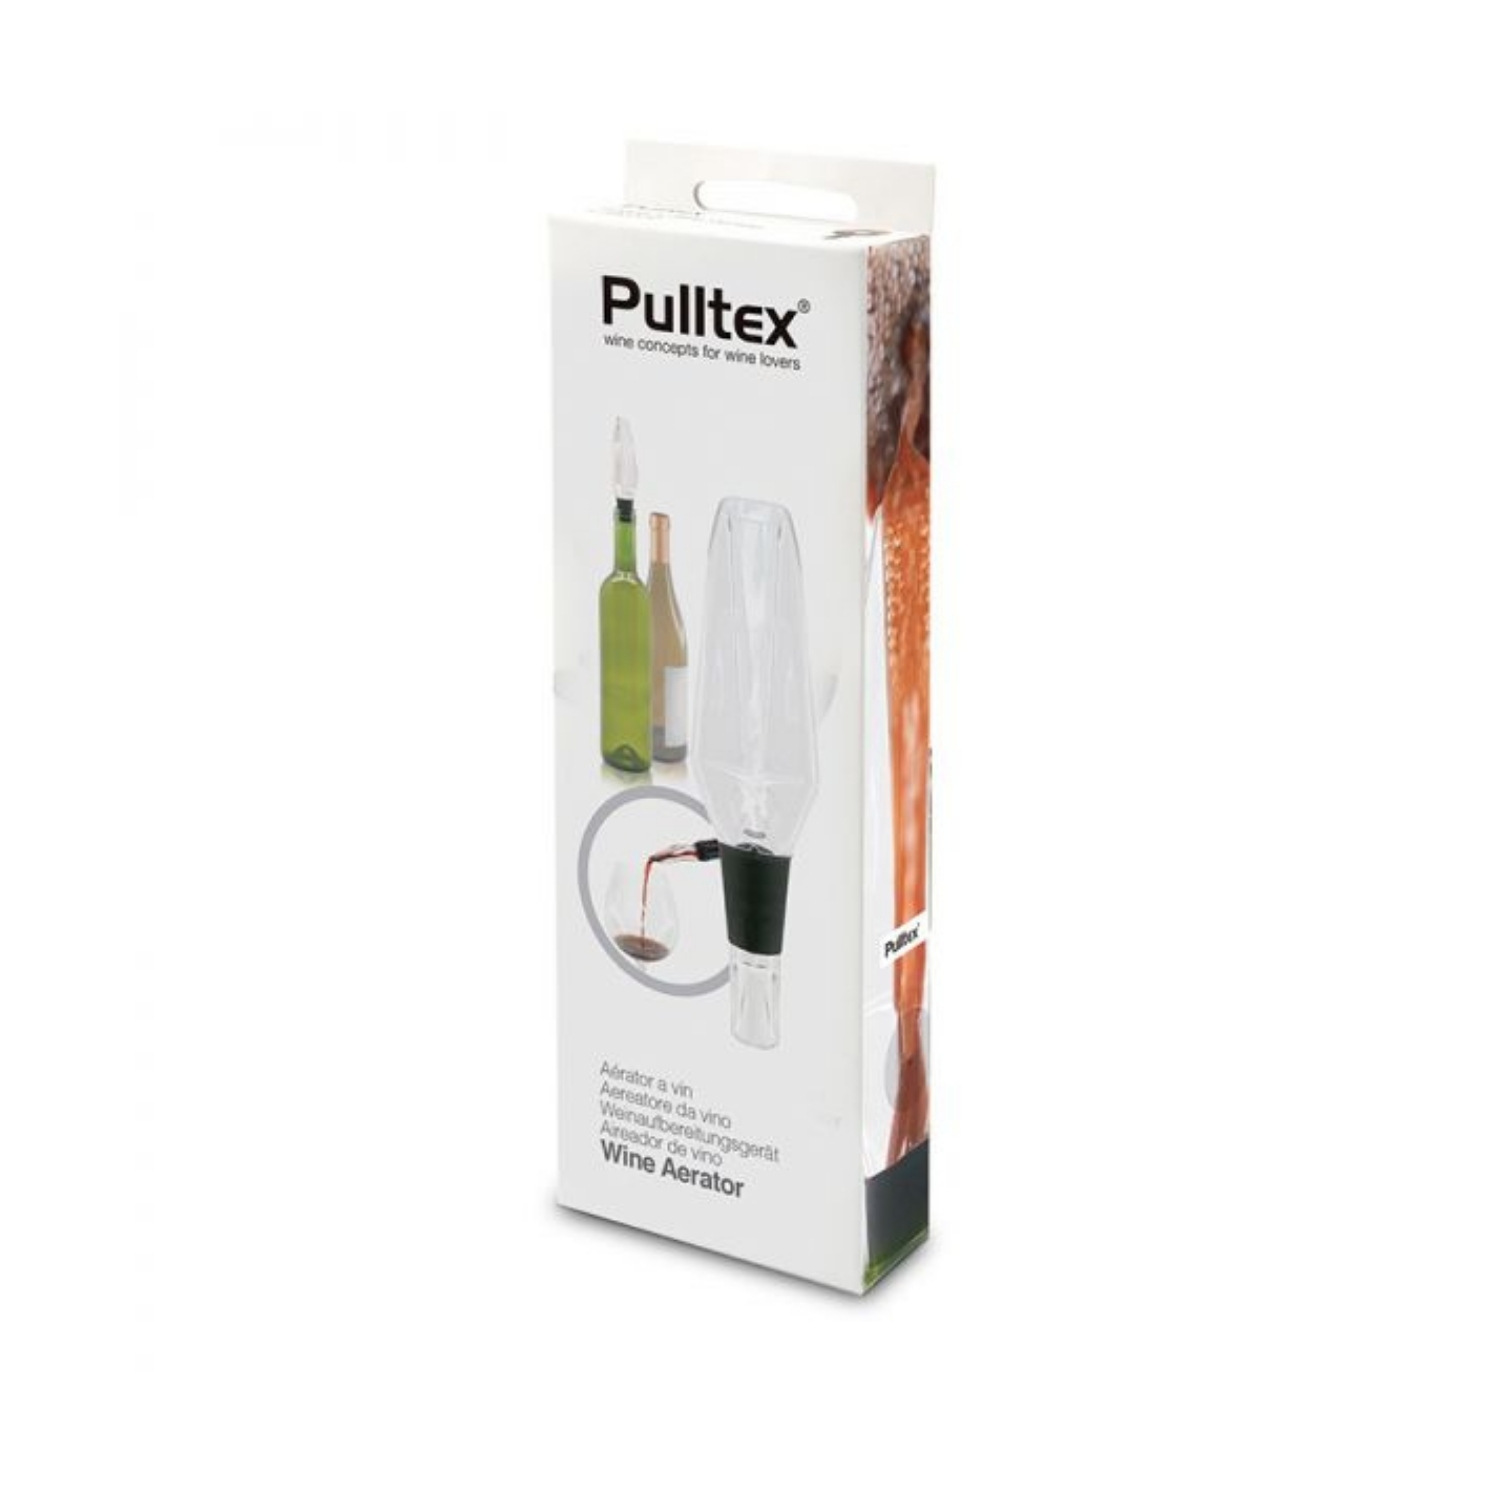 Pulltex Wine Aerator